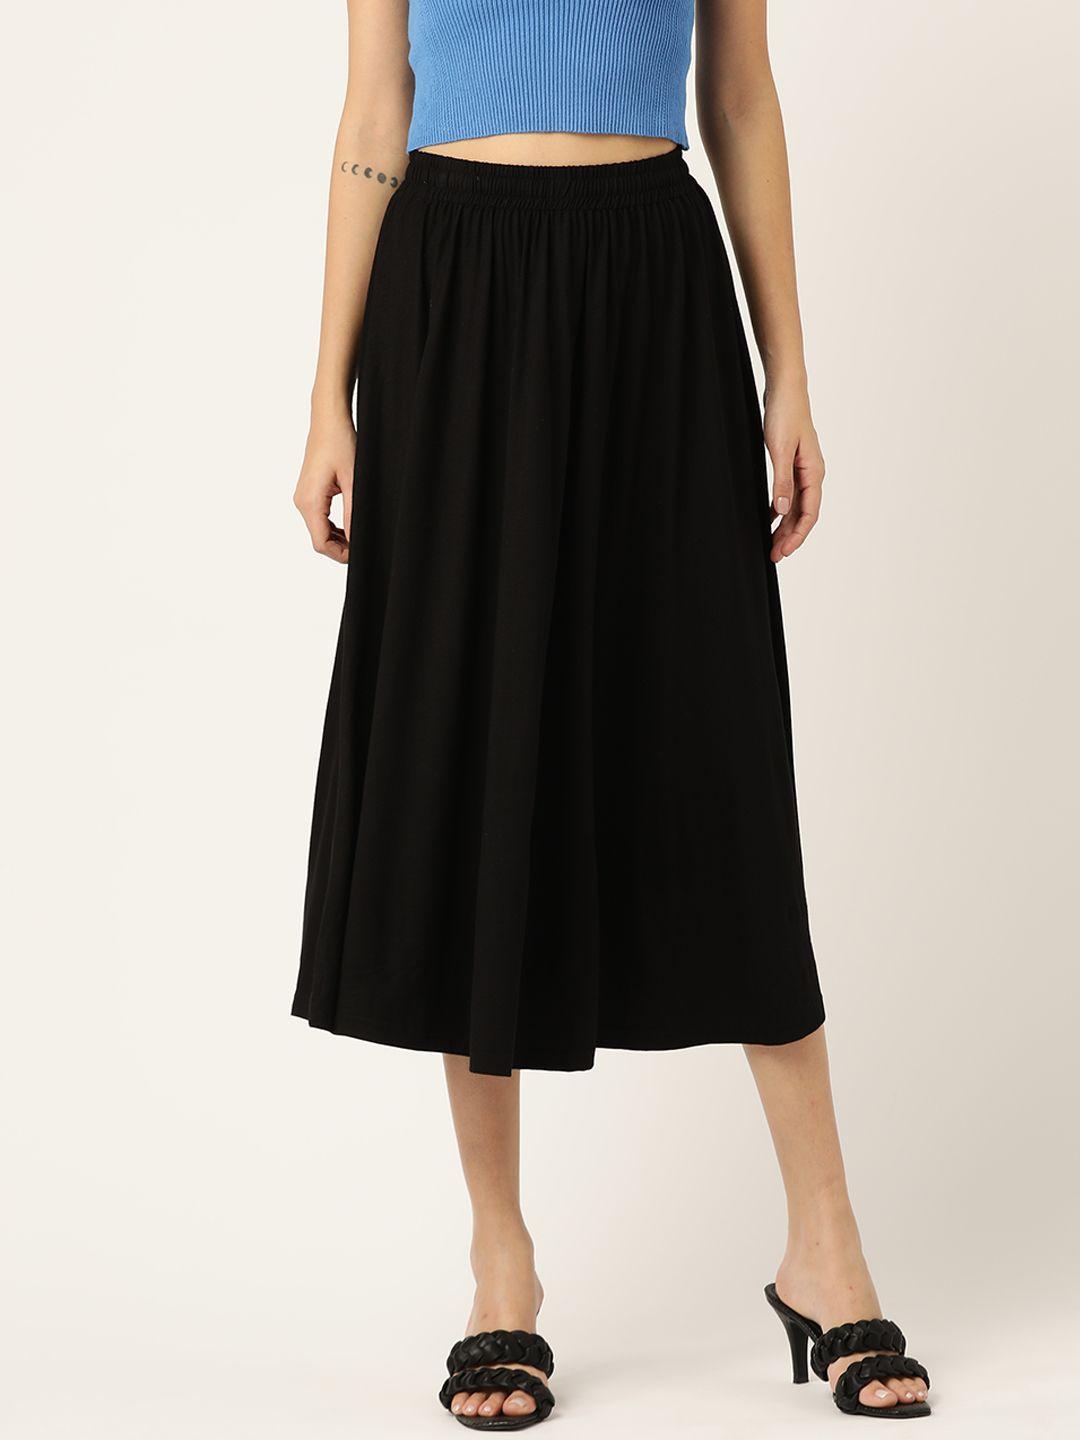 brinns women black solid a-line skirt